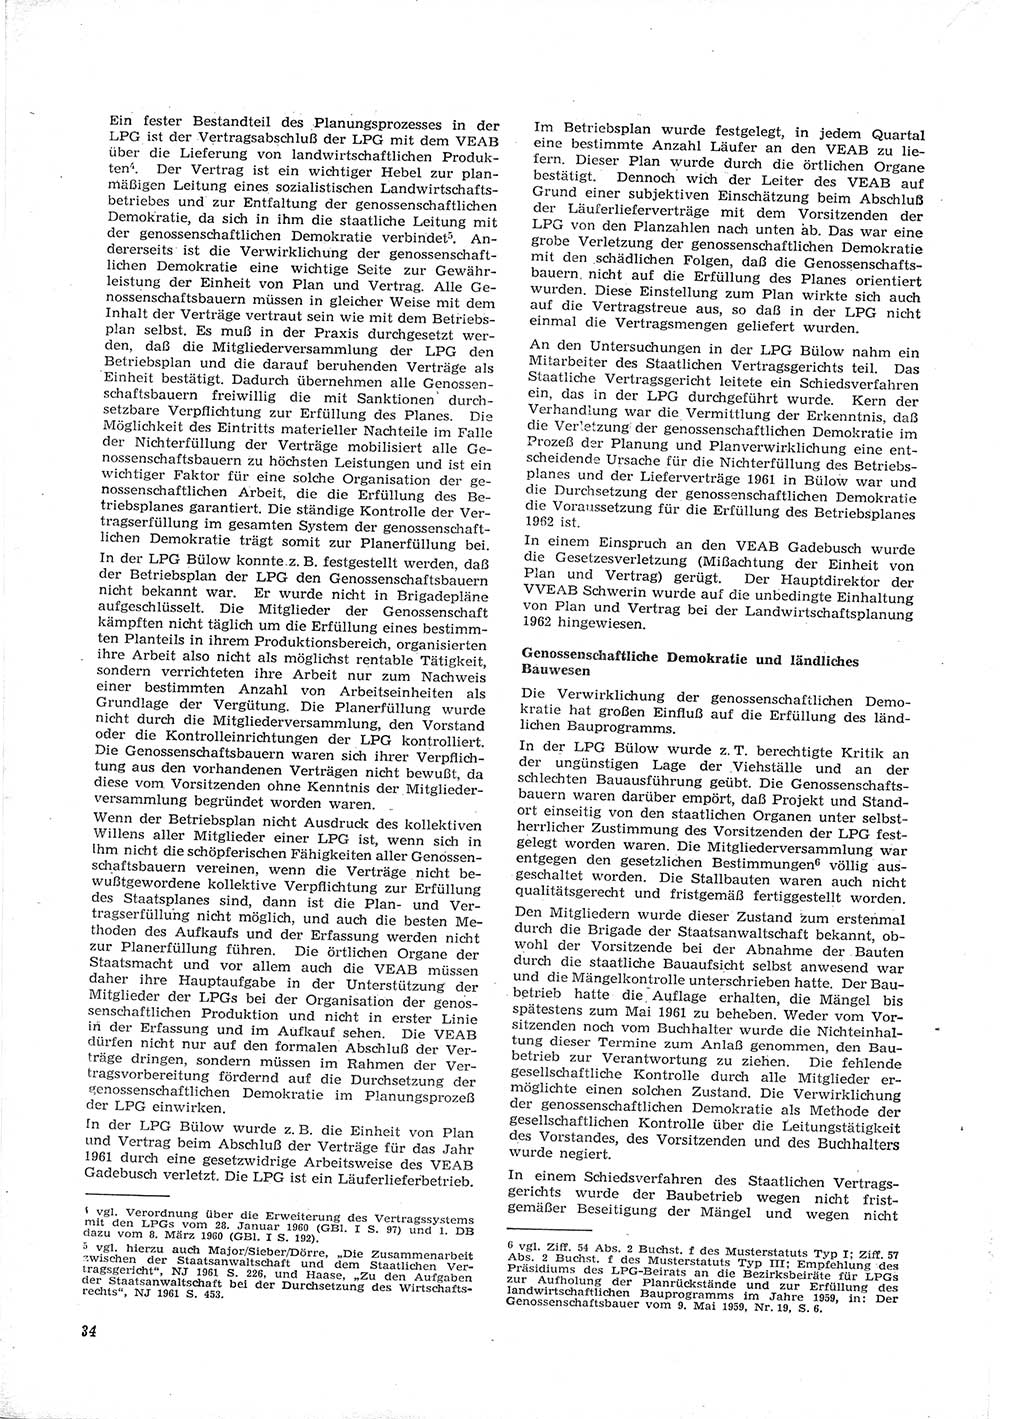 Neue Justiz (NJ), Zeitschrift für Recht und Rechtswissenschaft [Deutsche Demokratische Republik (DDR)], 16. Jahrgang 1962, Seite 34 (NJ DDR 1962, S. 34)